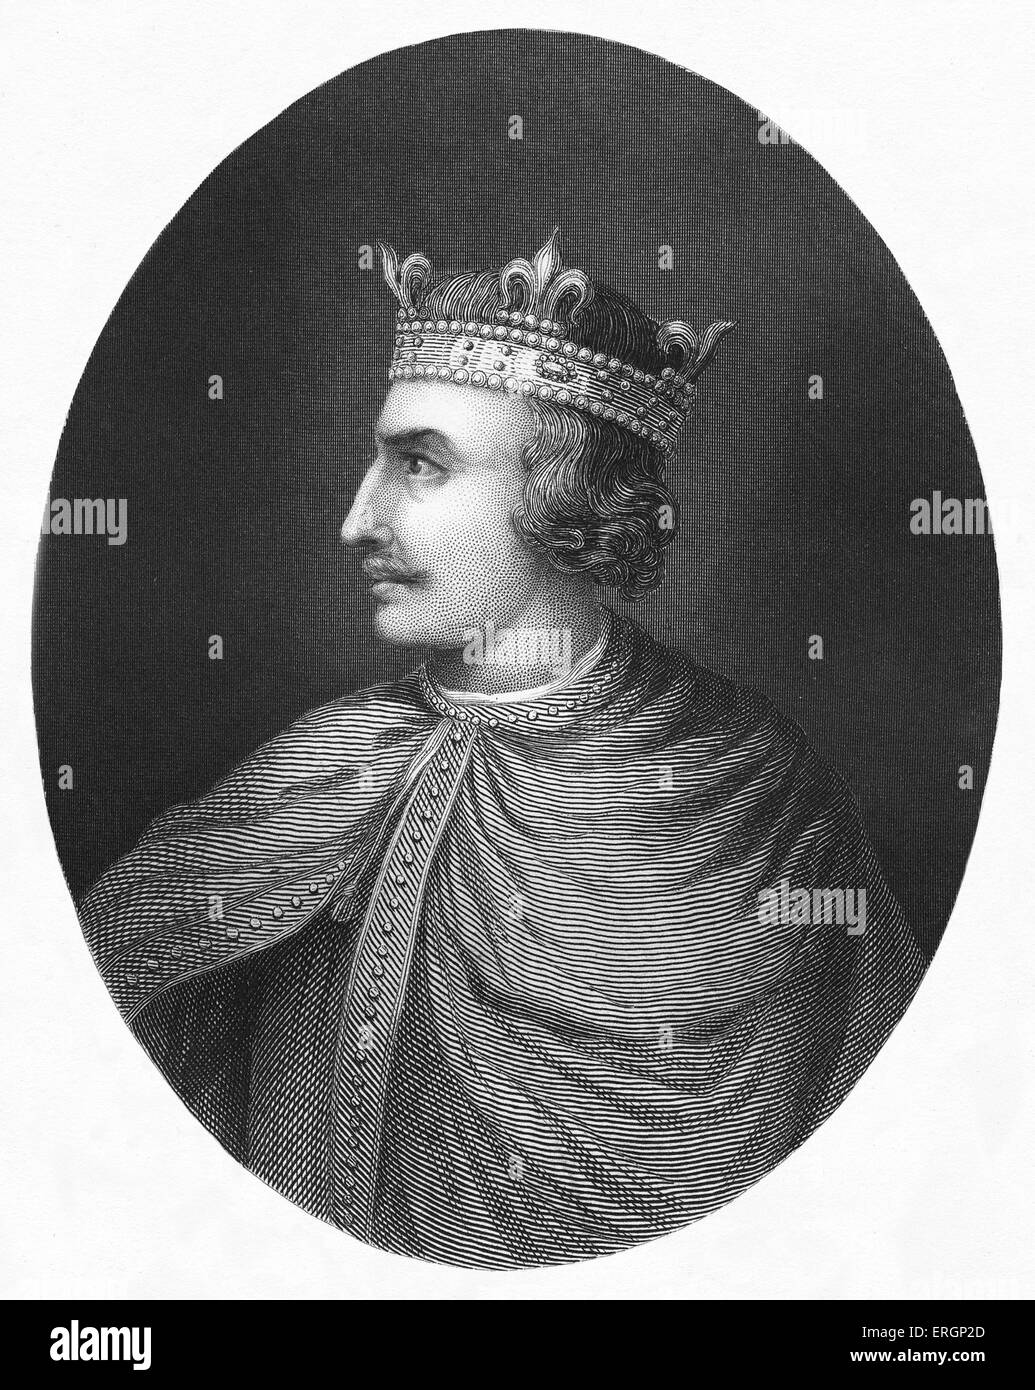 Heinrich i., König von England von 1100 bis 1135, Porträt. 1068 – 1 Dezember 1135. Stockfoto